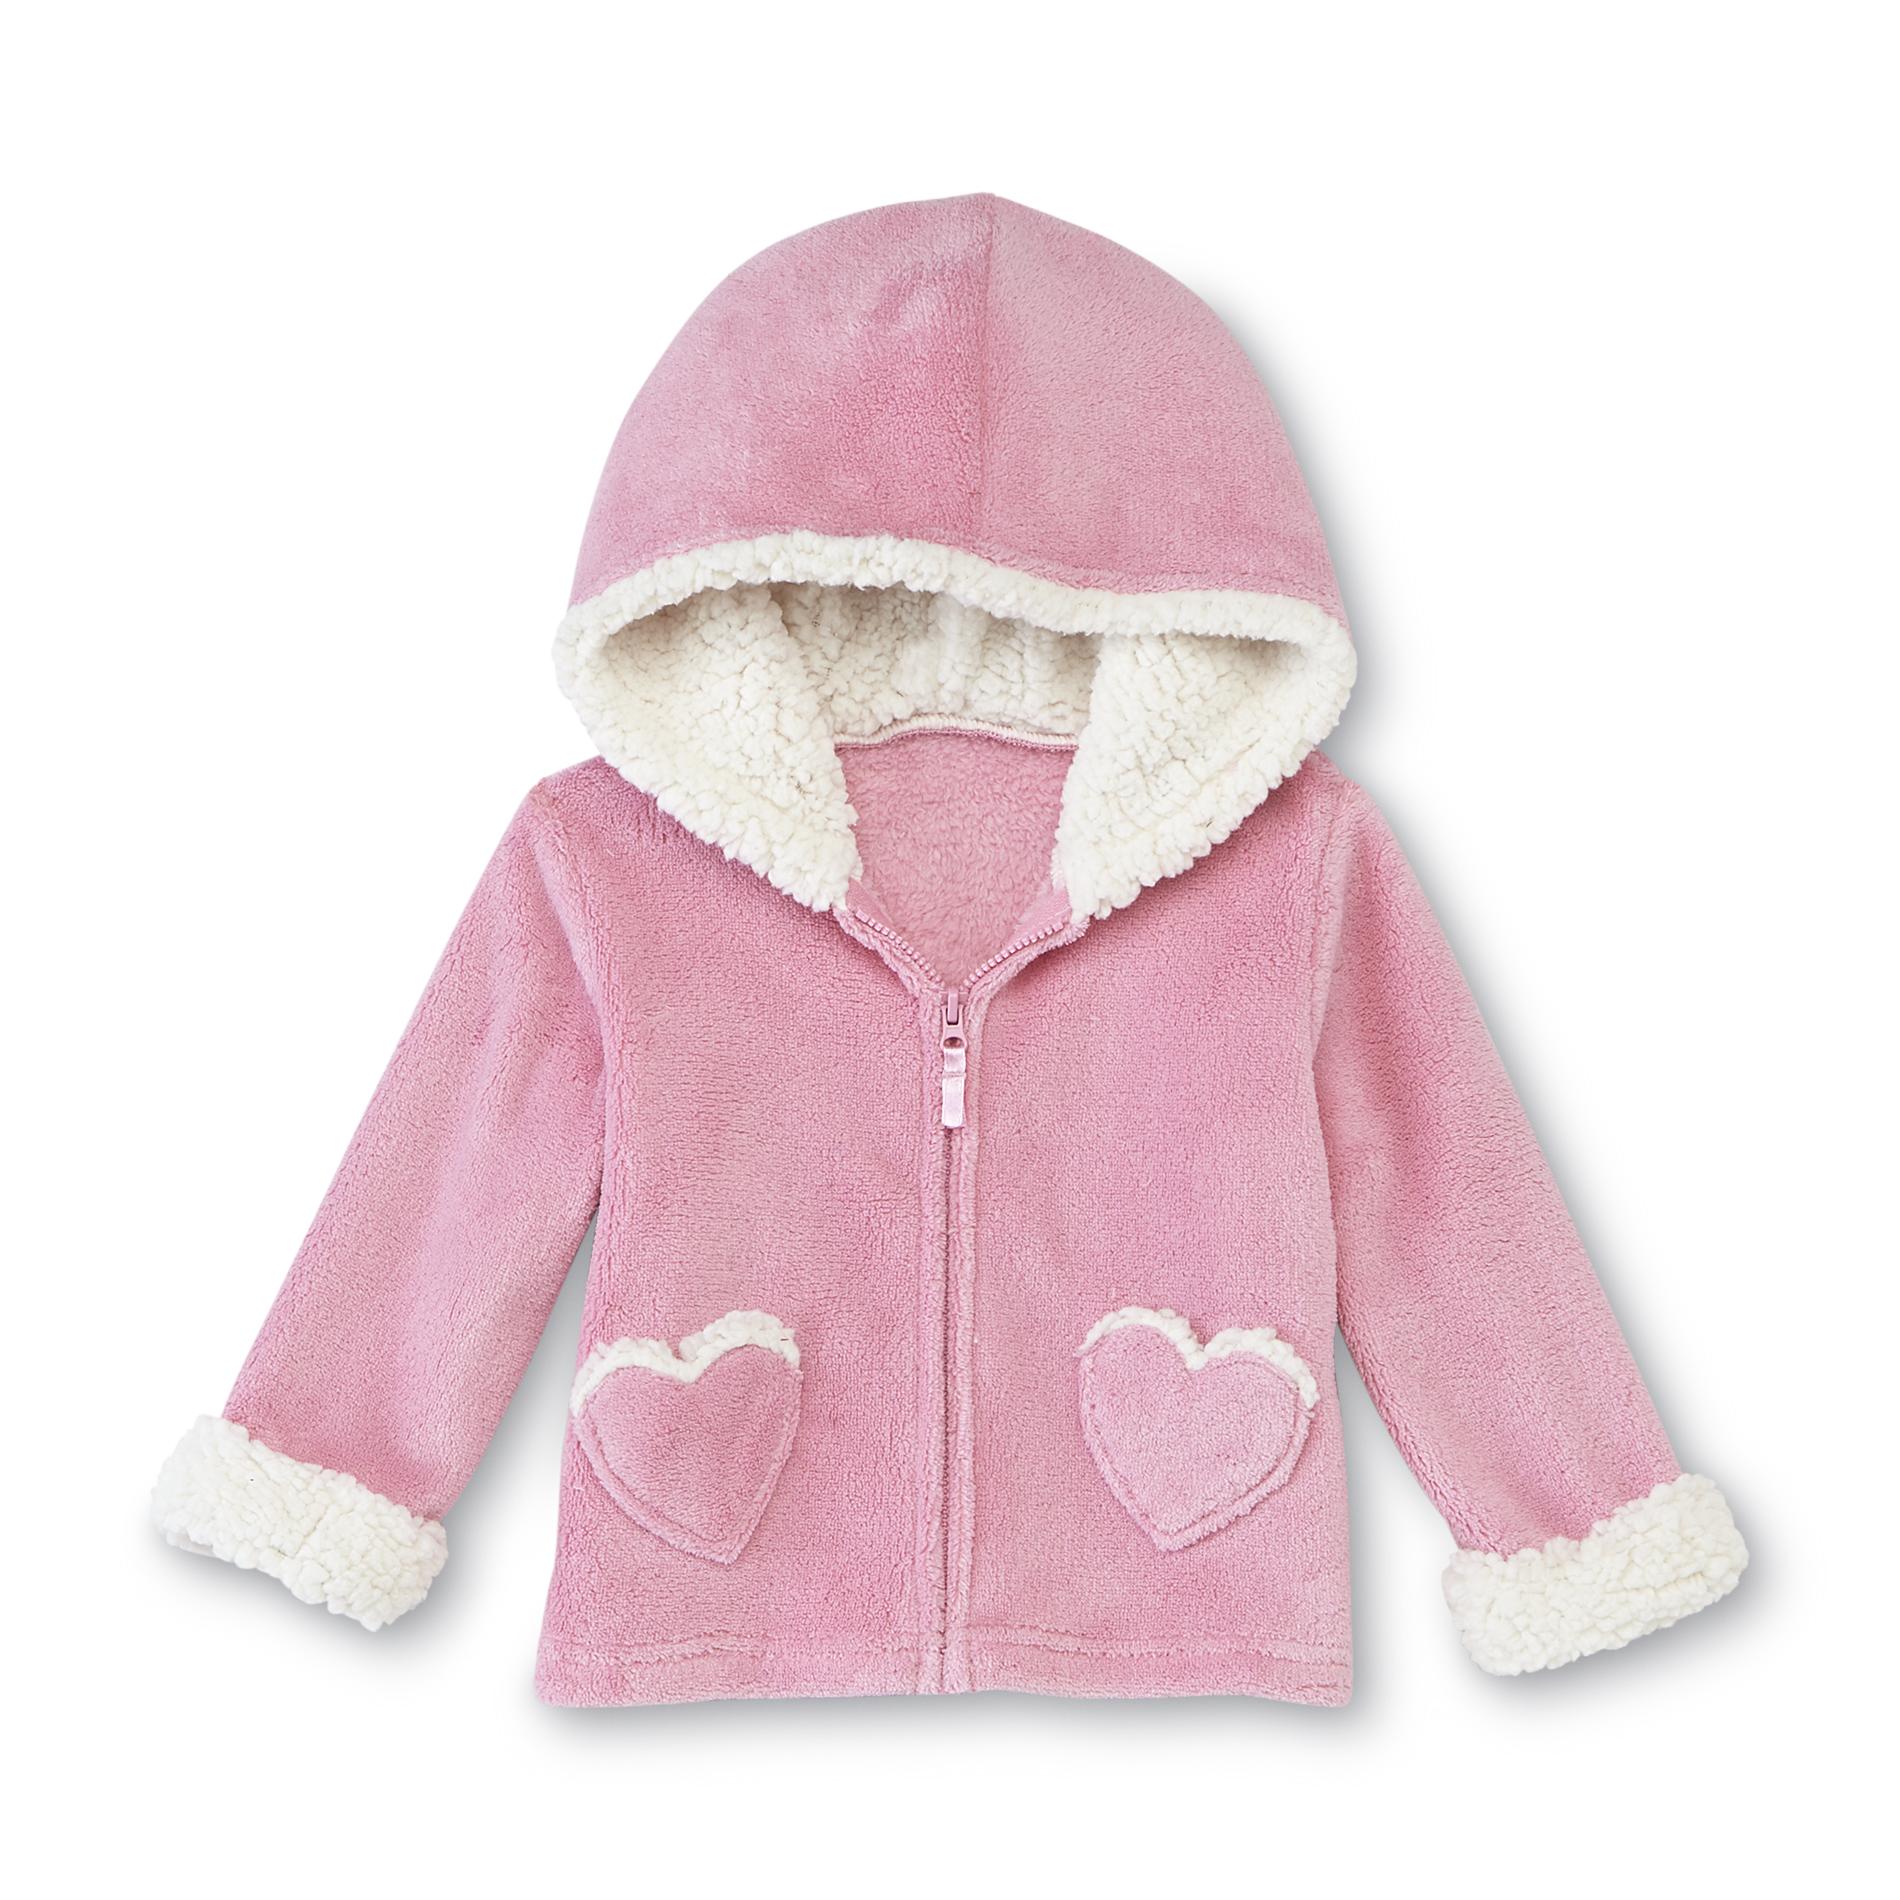 Small Wonders Newborn Girl's Plush Hoodie Jacket - Heart